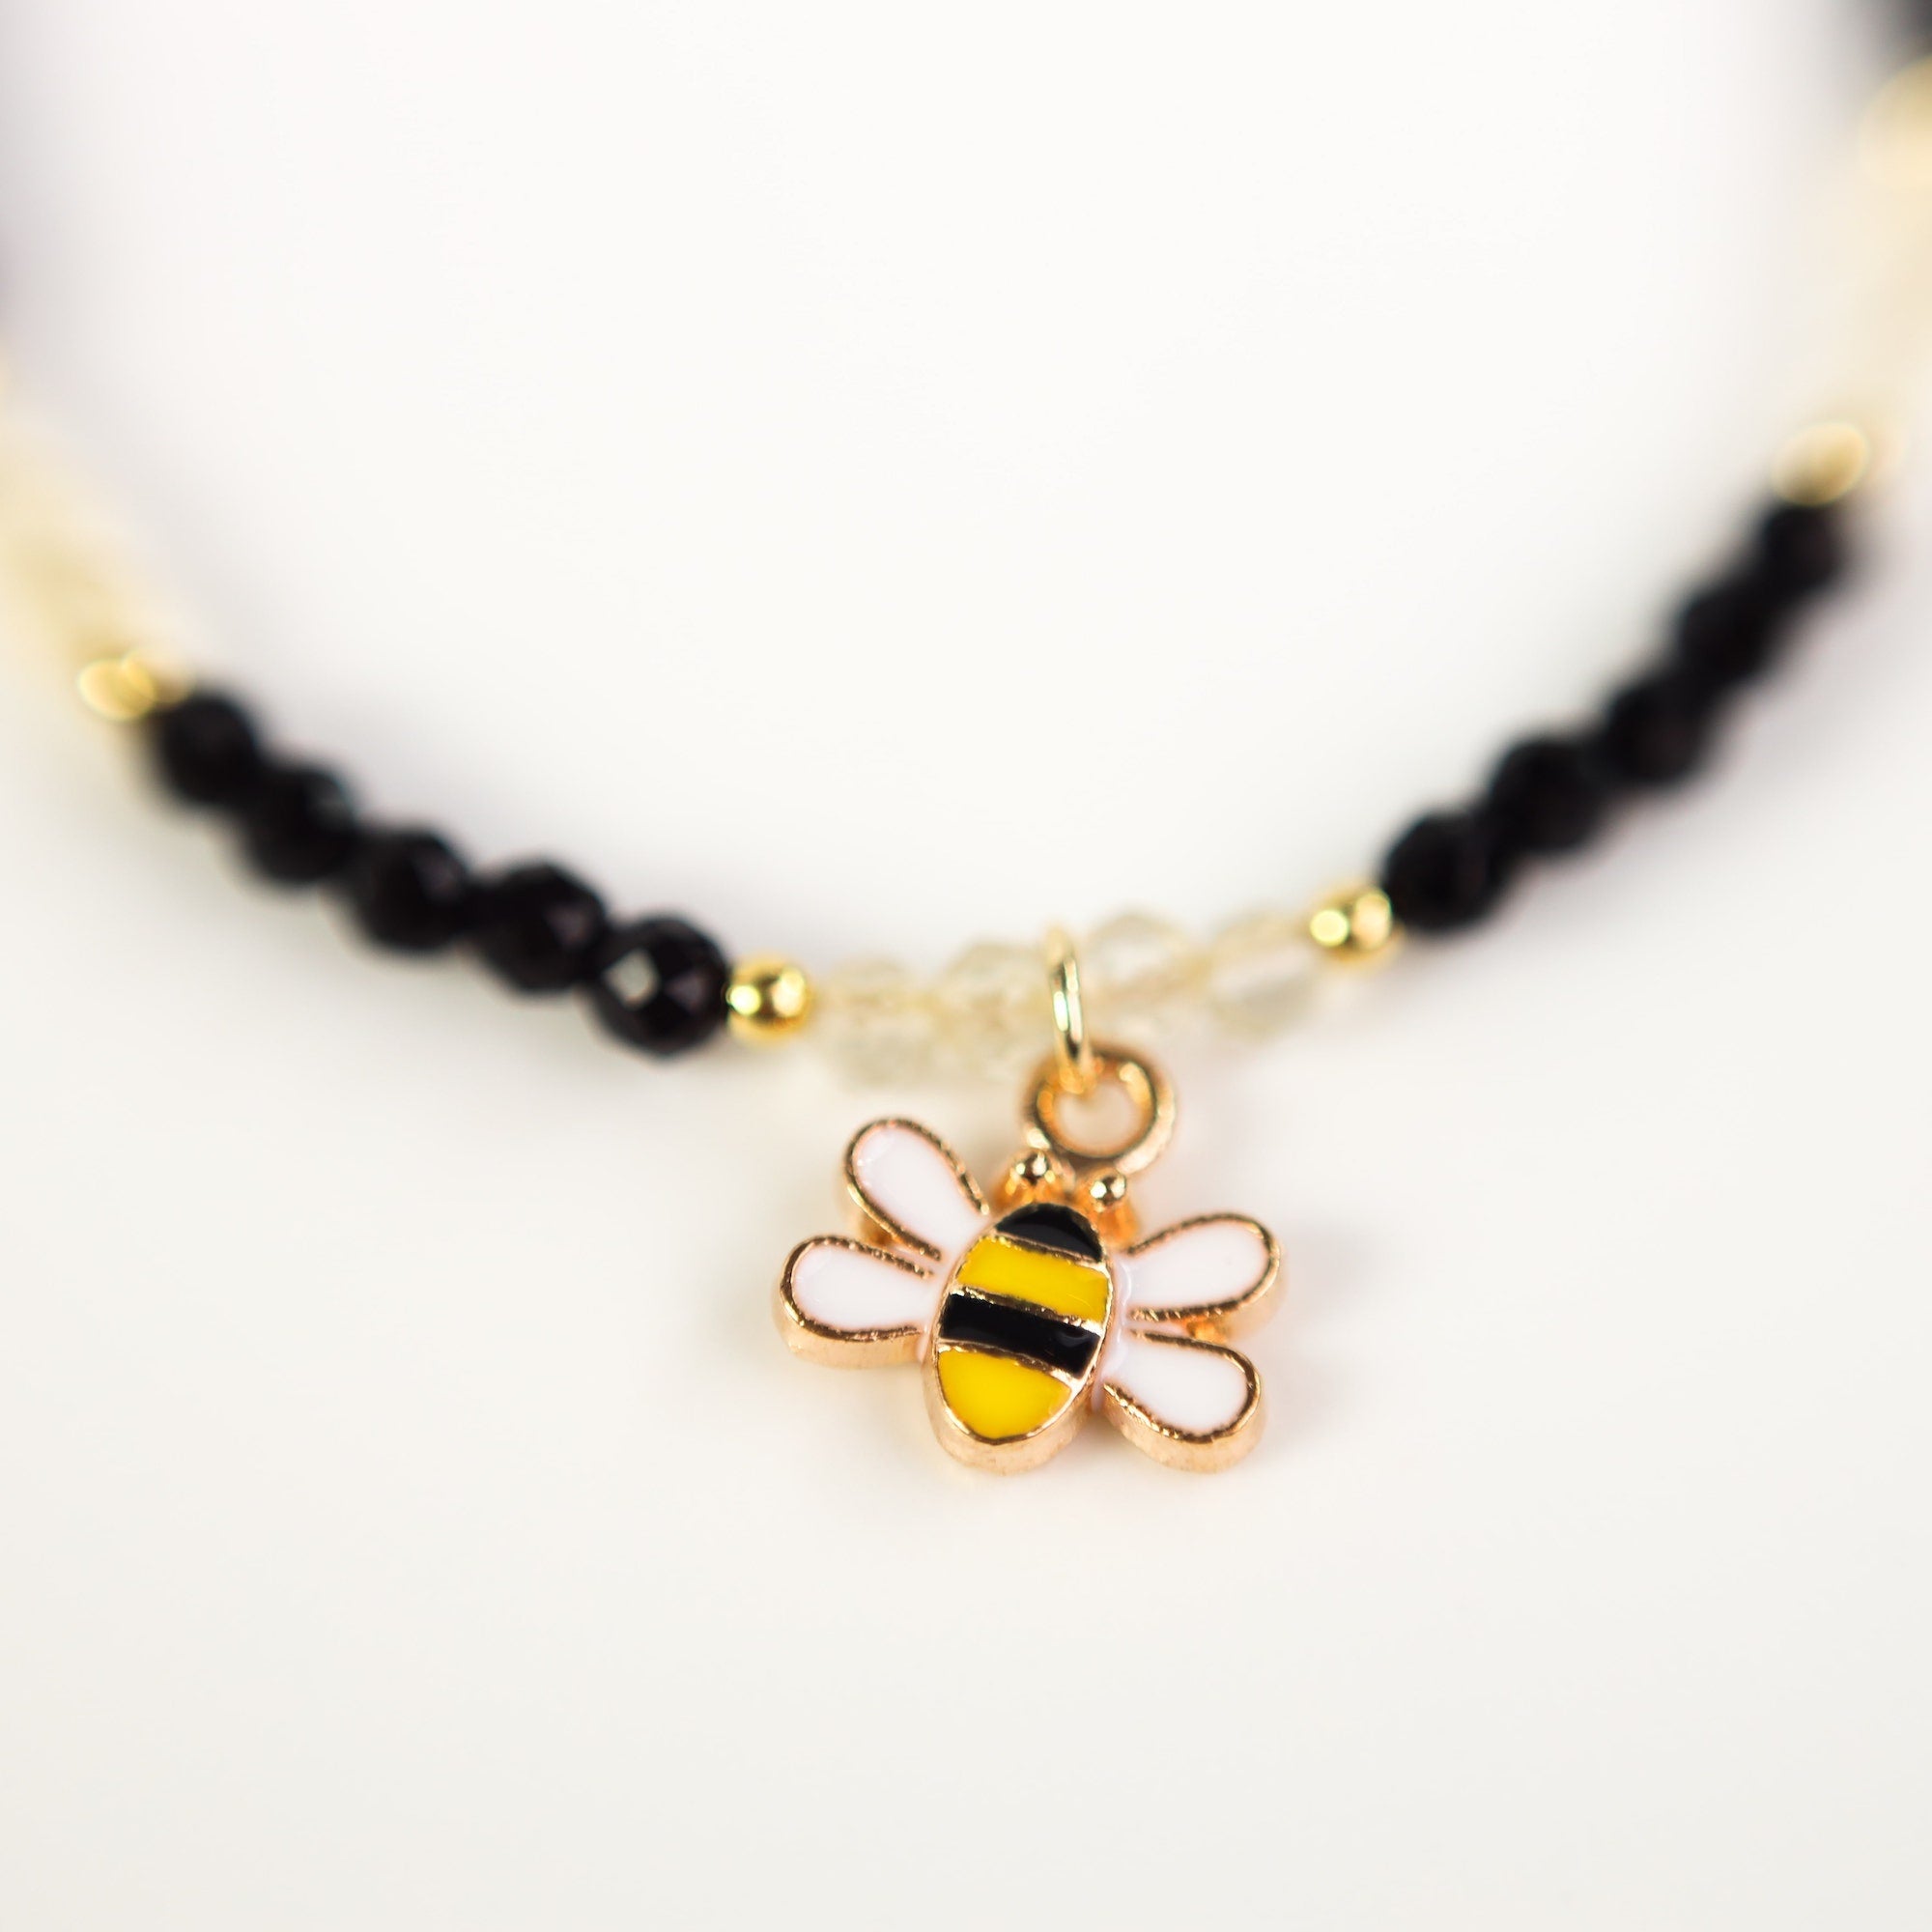 Buy Honey Bee Bracelet Bee Jewelry Honey Jewelry Queen Bee Online in India  - Etsy